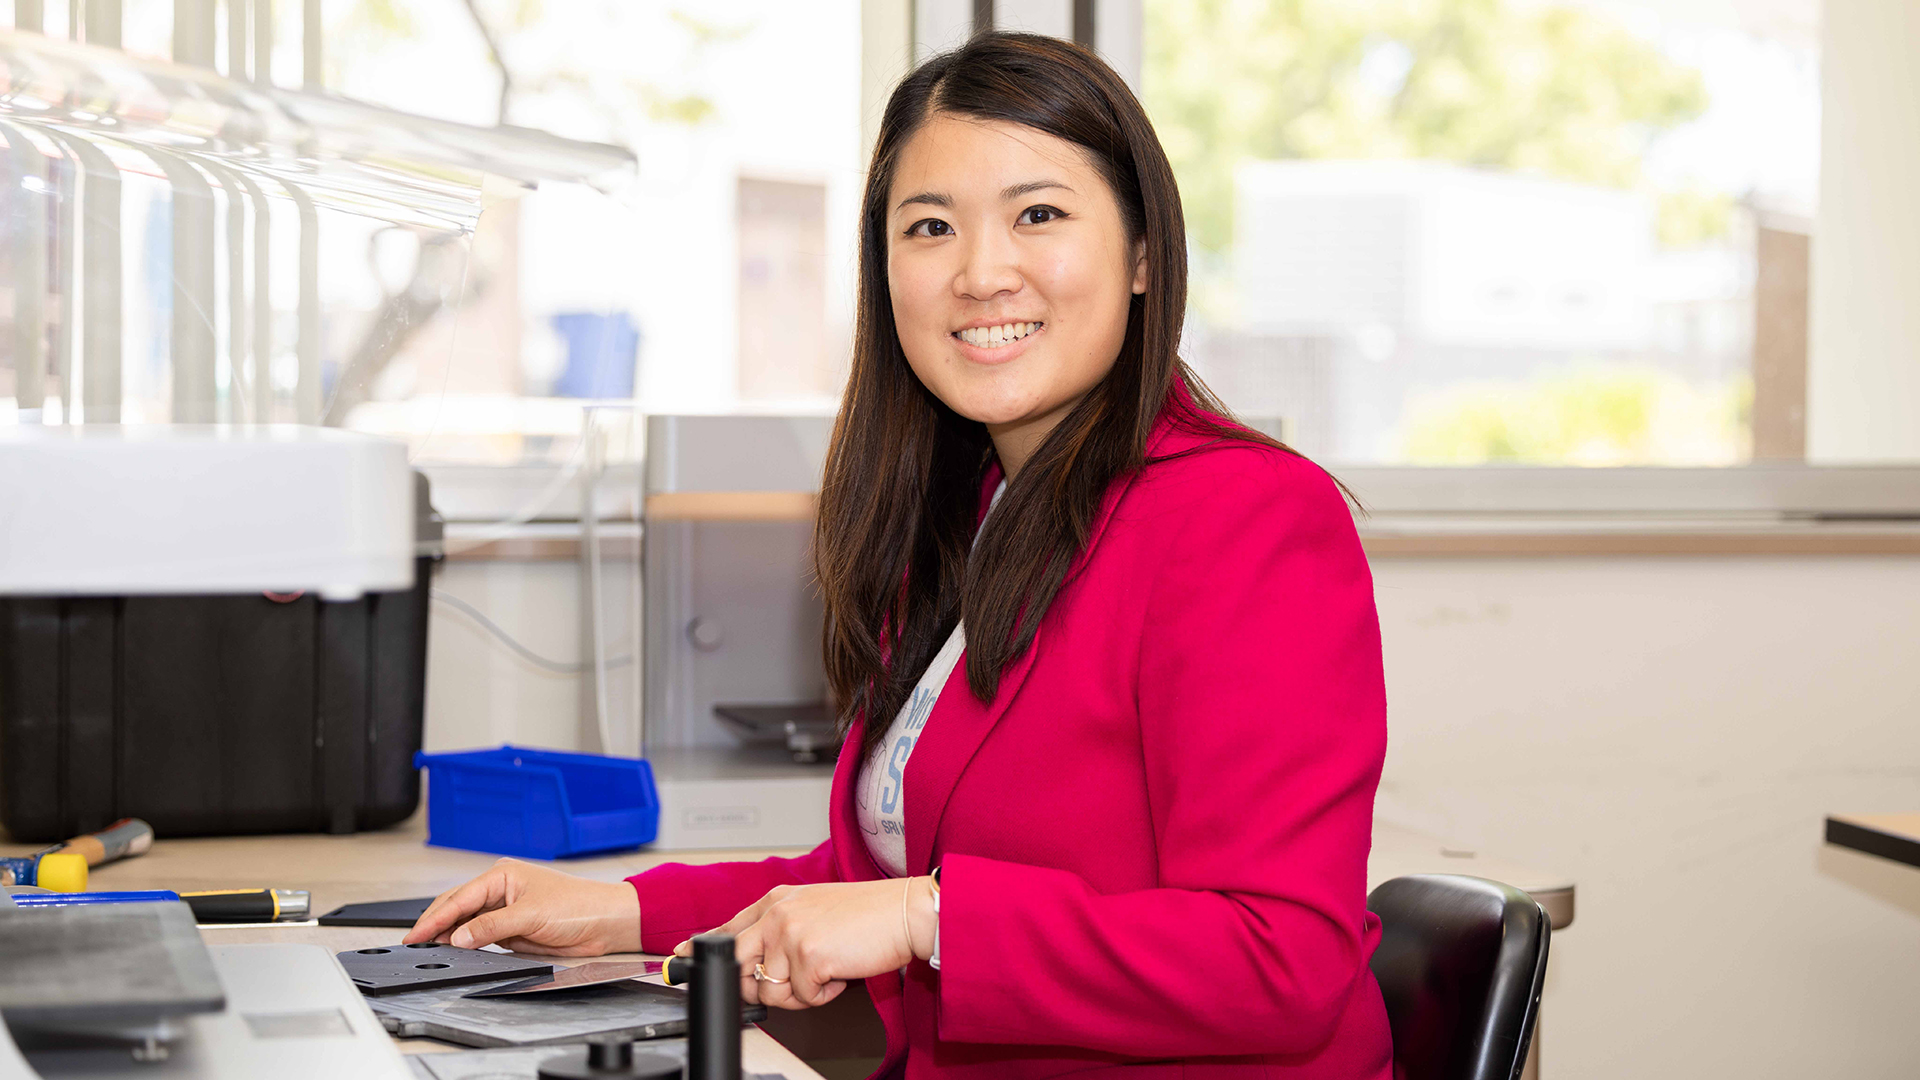 Michelle Kyin: Working for women in STEM